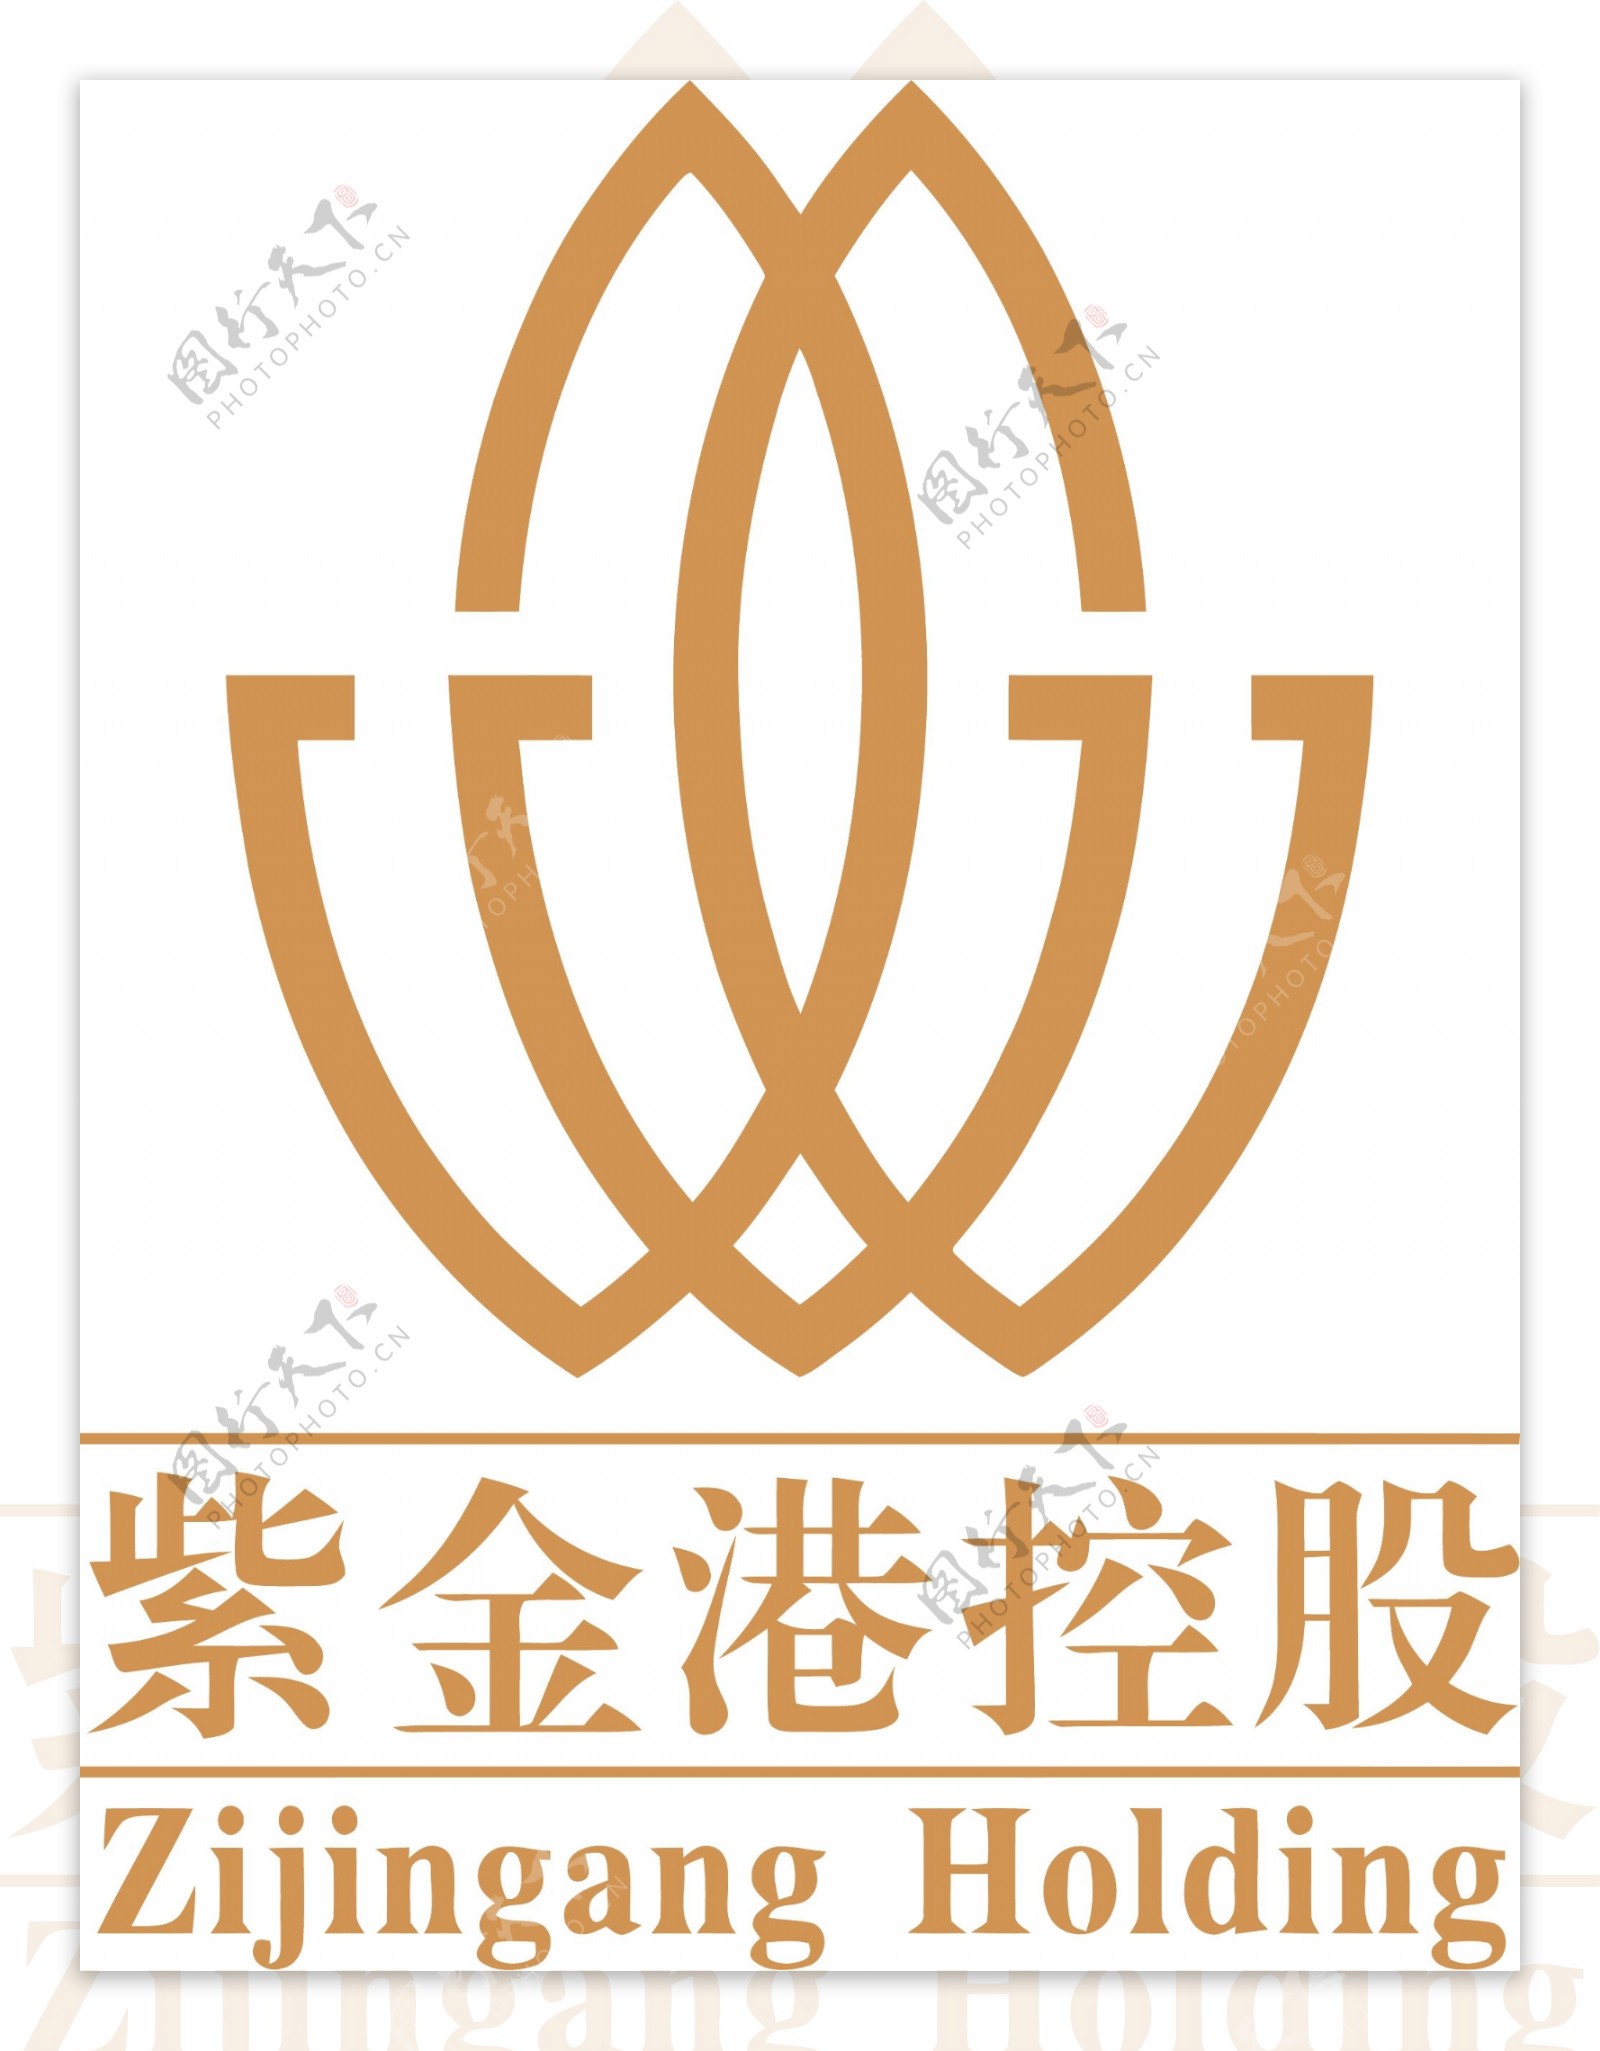 紫金港控股logo